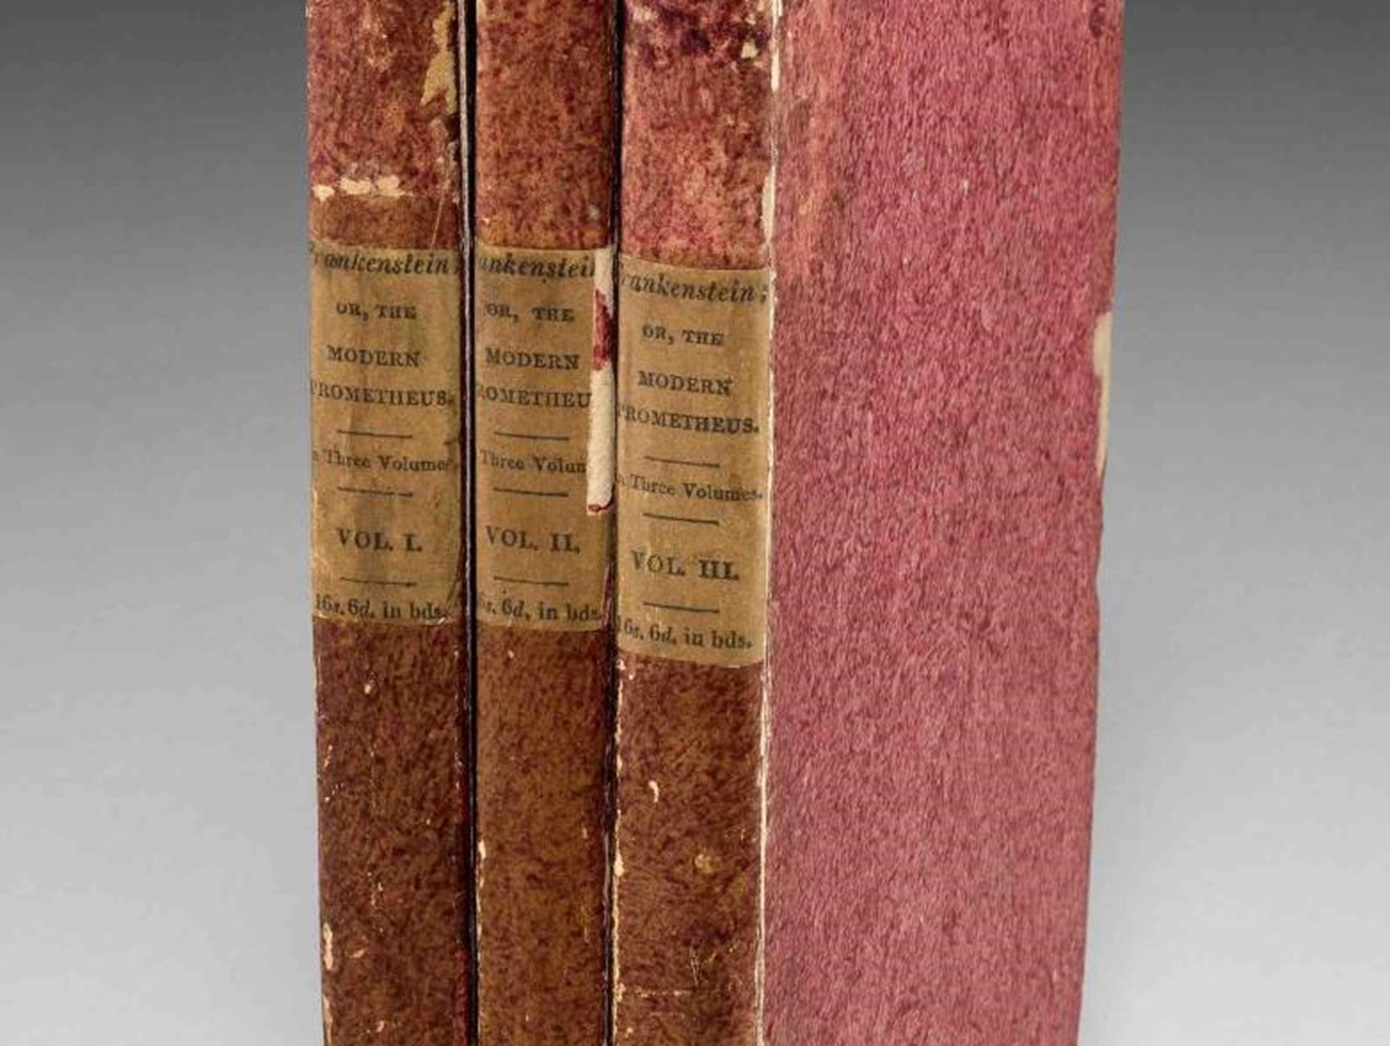 Σπάνιο βιβλίο πρώτης έκδοσης του «Φρανκενστάιν» πωλήθηκε με αστρονομικό πόσο σε δημοπρασία